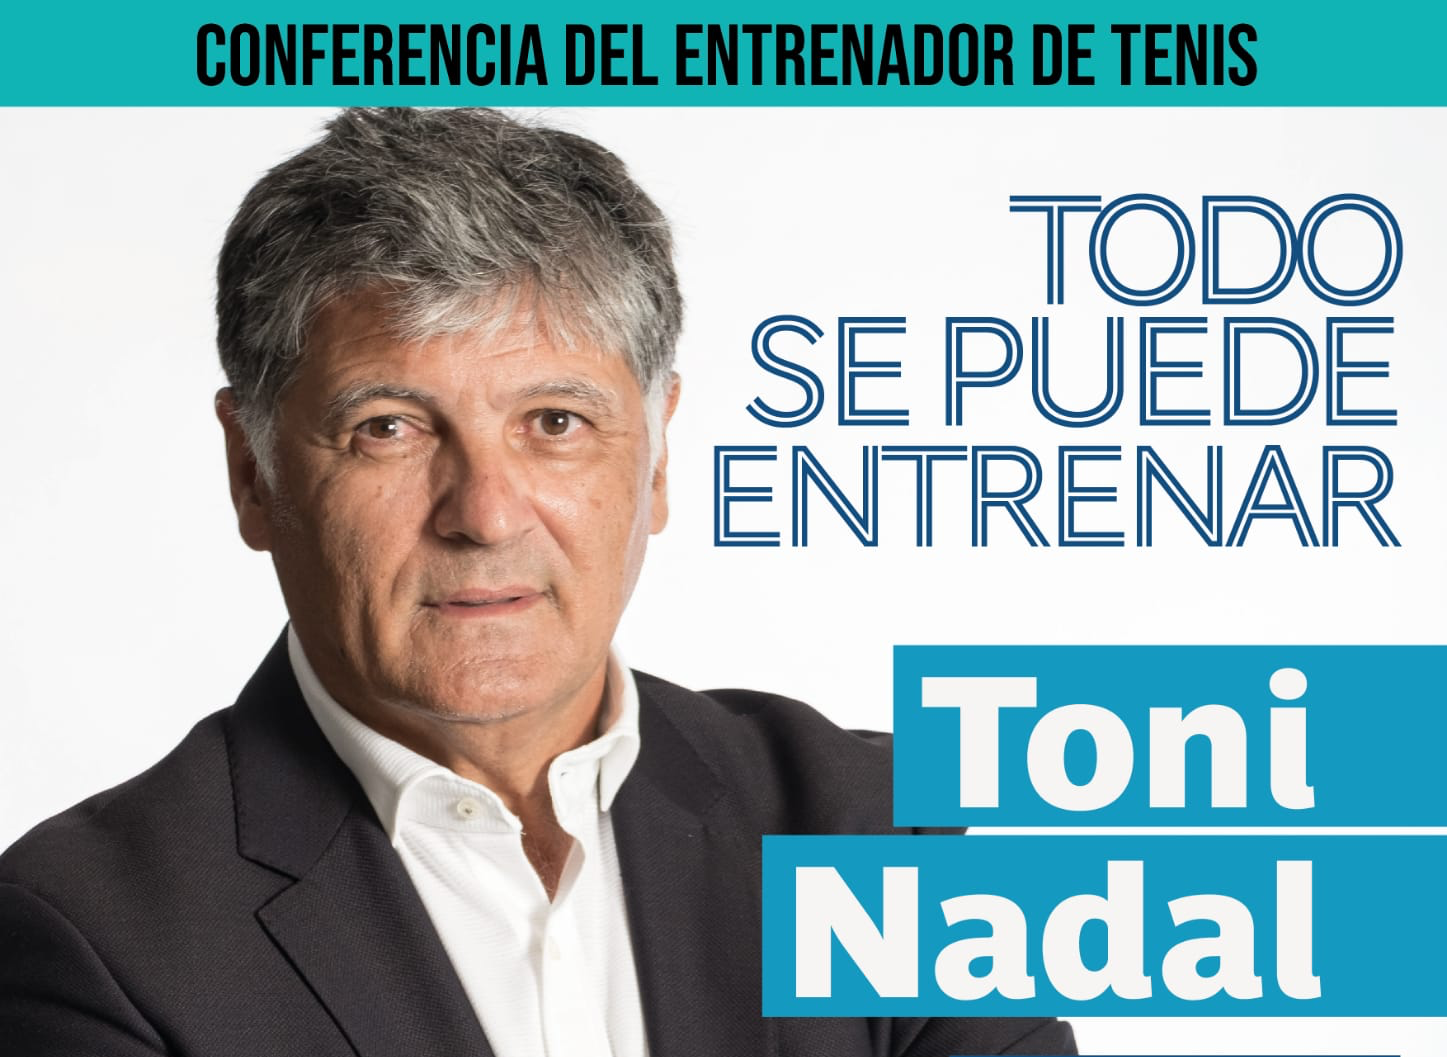 Conferencia del entrenador Toni Nadal en Arucas